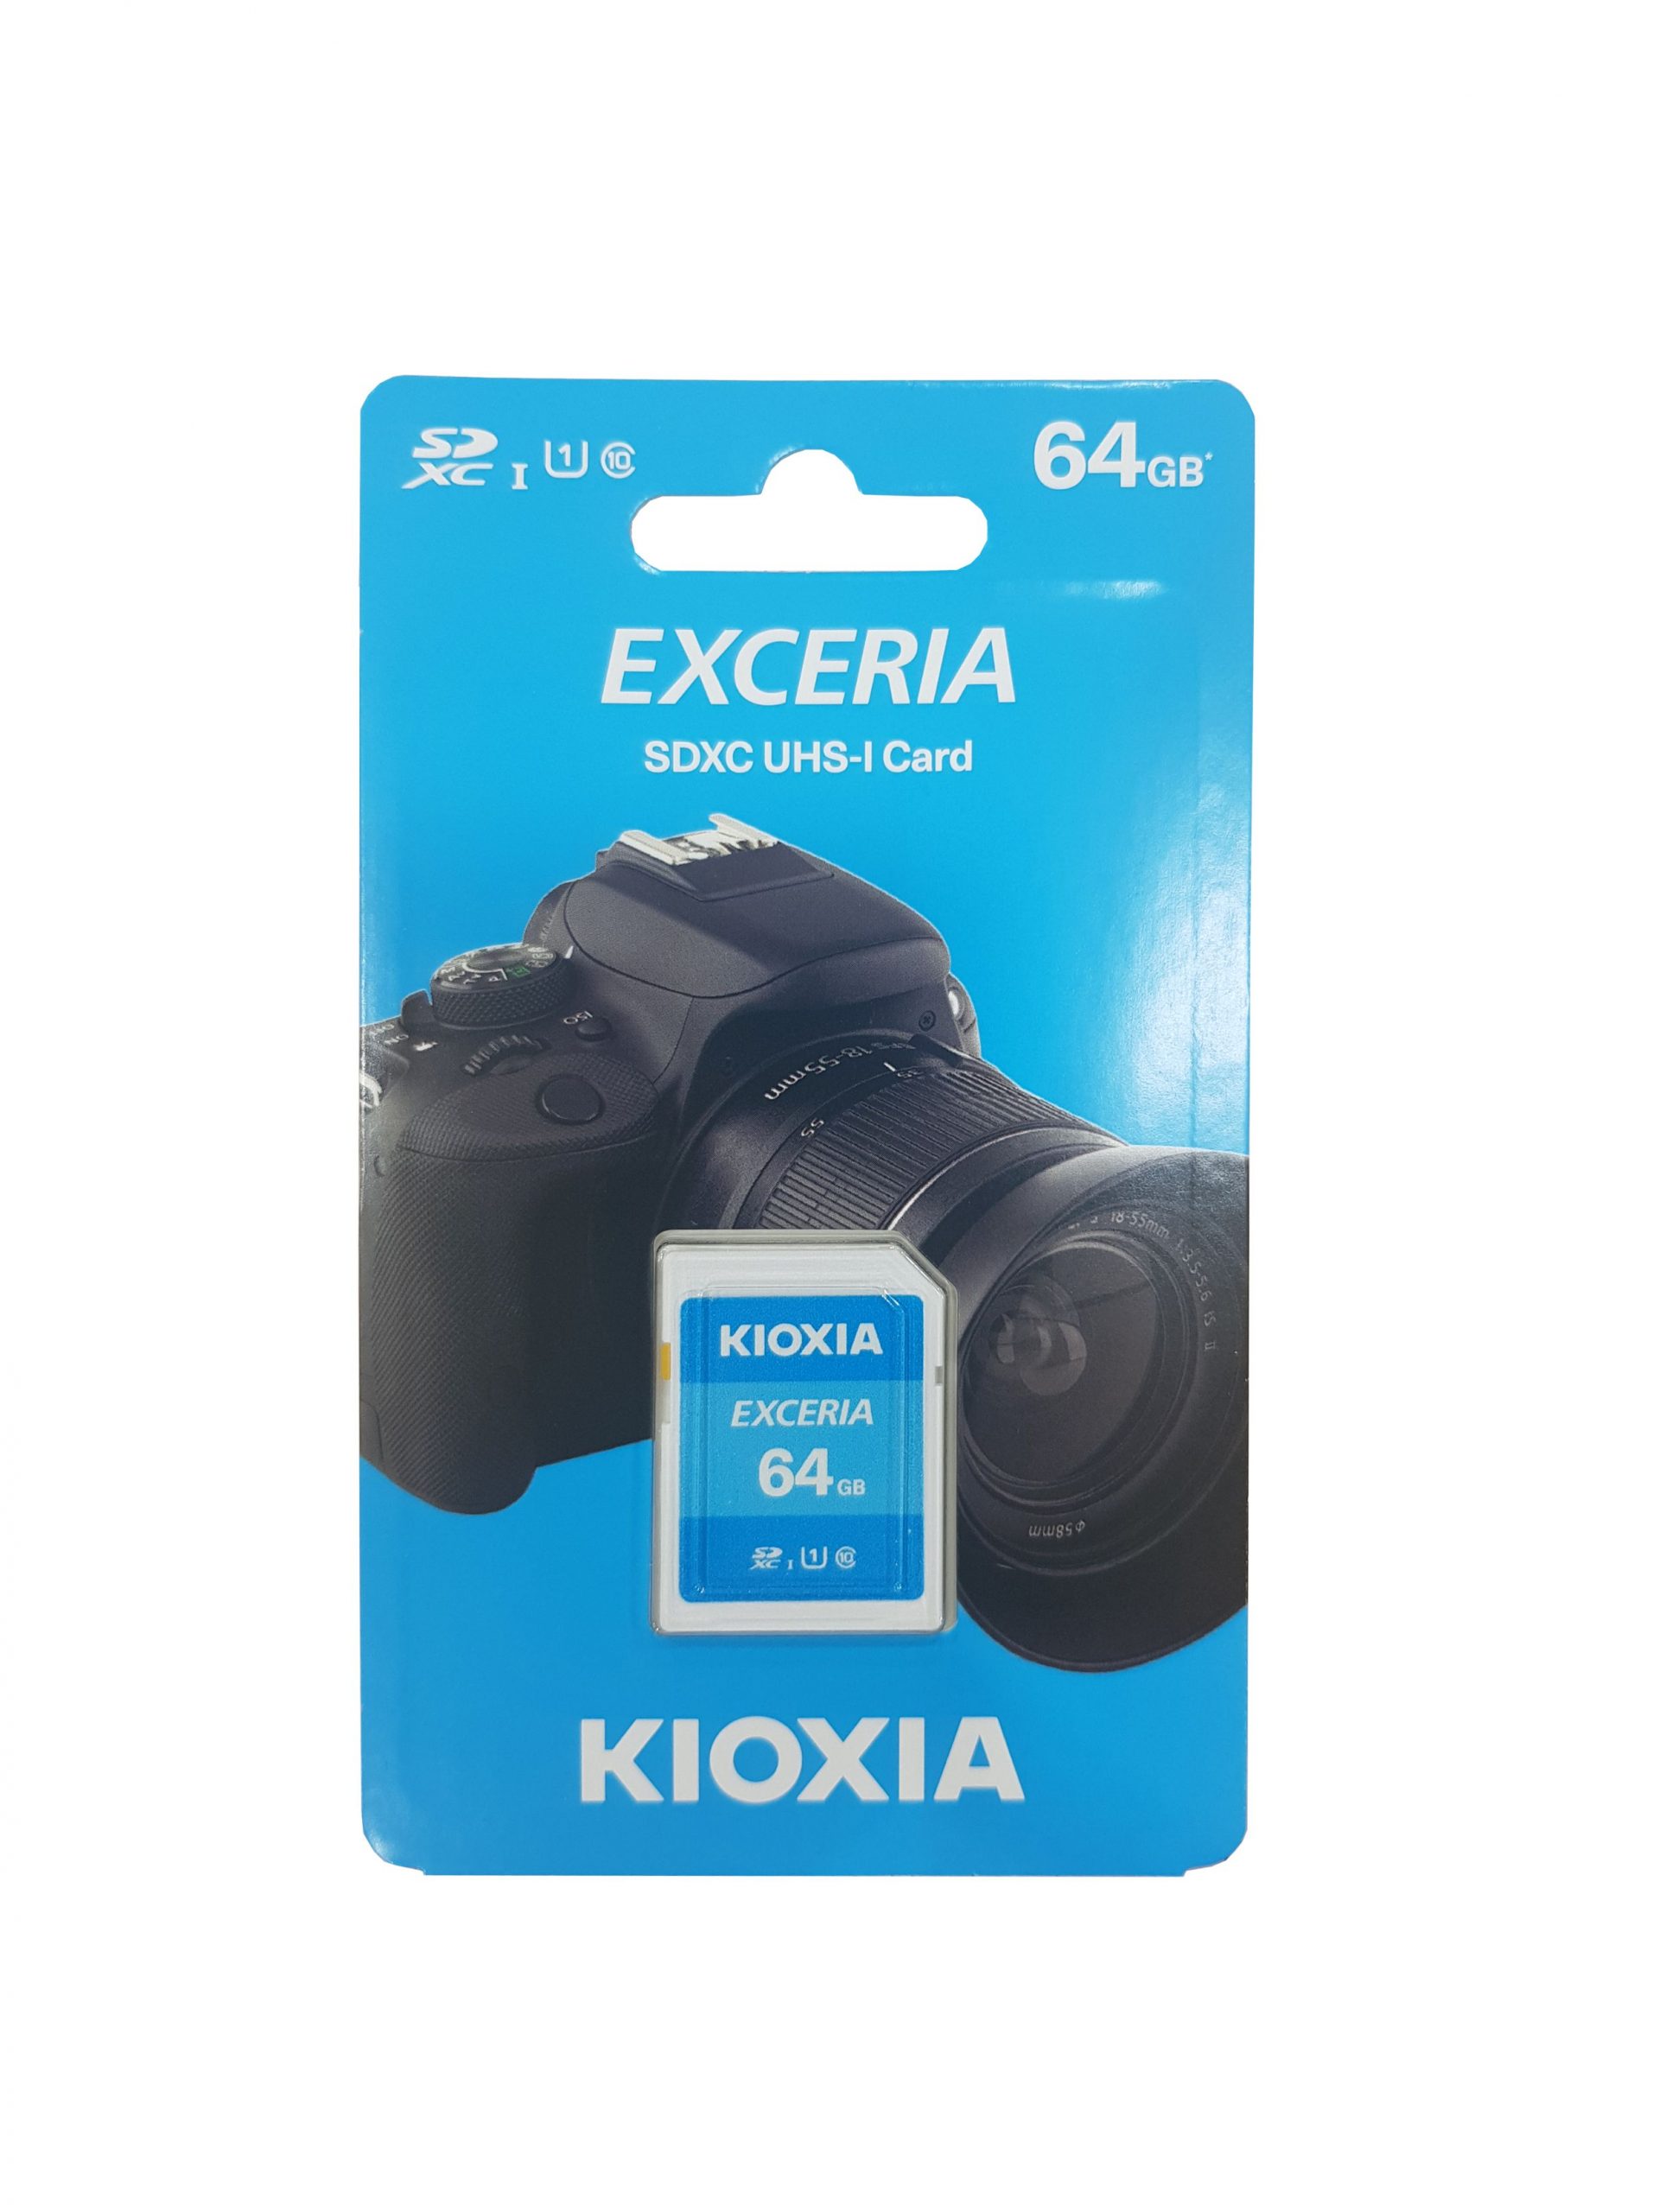 KIOXIA Exceria SDHC UHS-1 Card 64GB